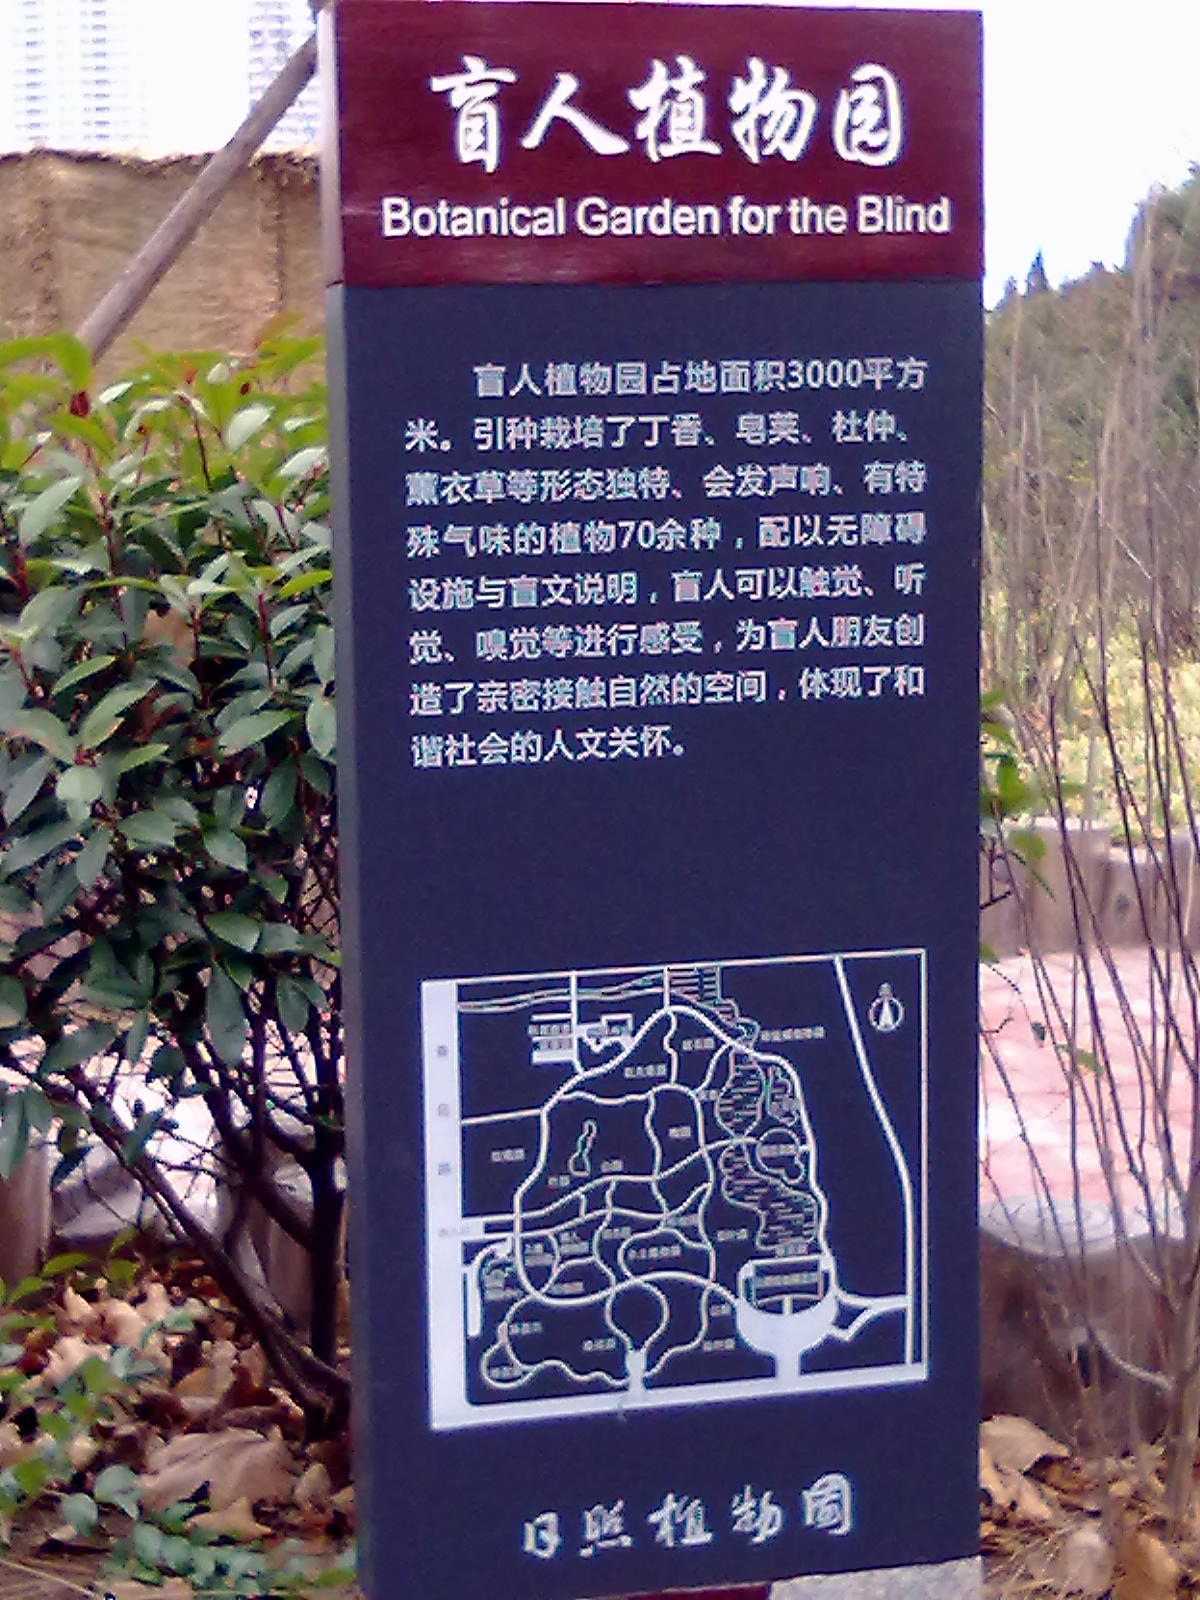 盲人植物園